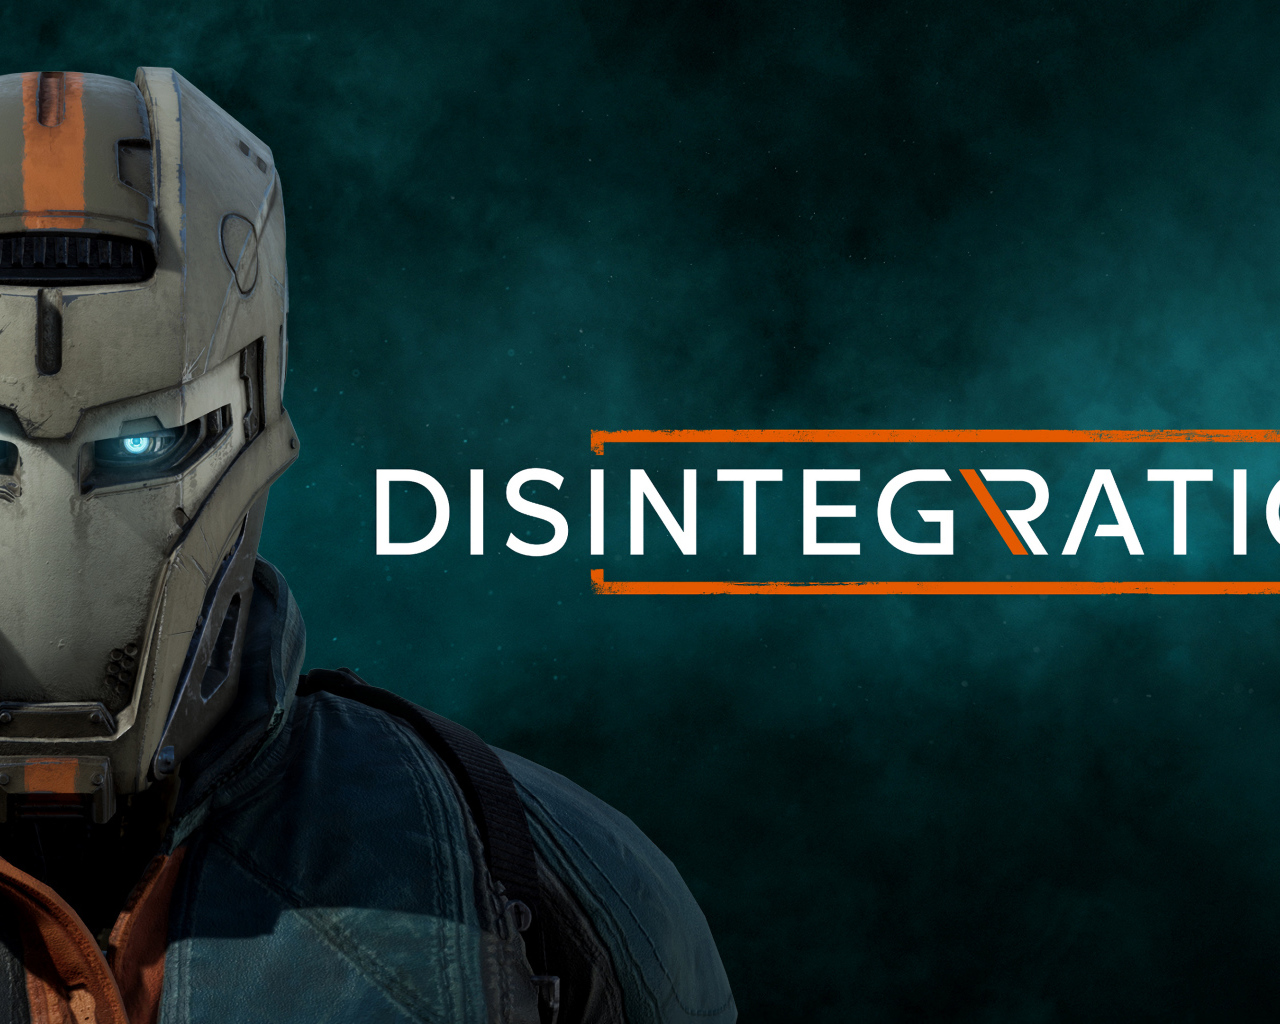 Постер новой компьютерной игры Disintegration, 2020